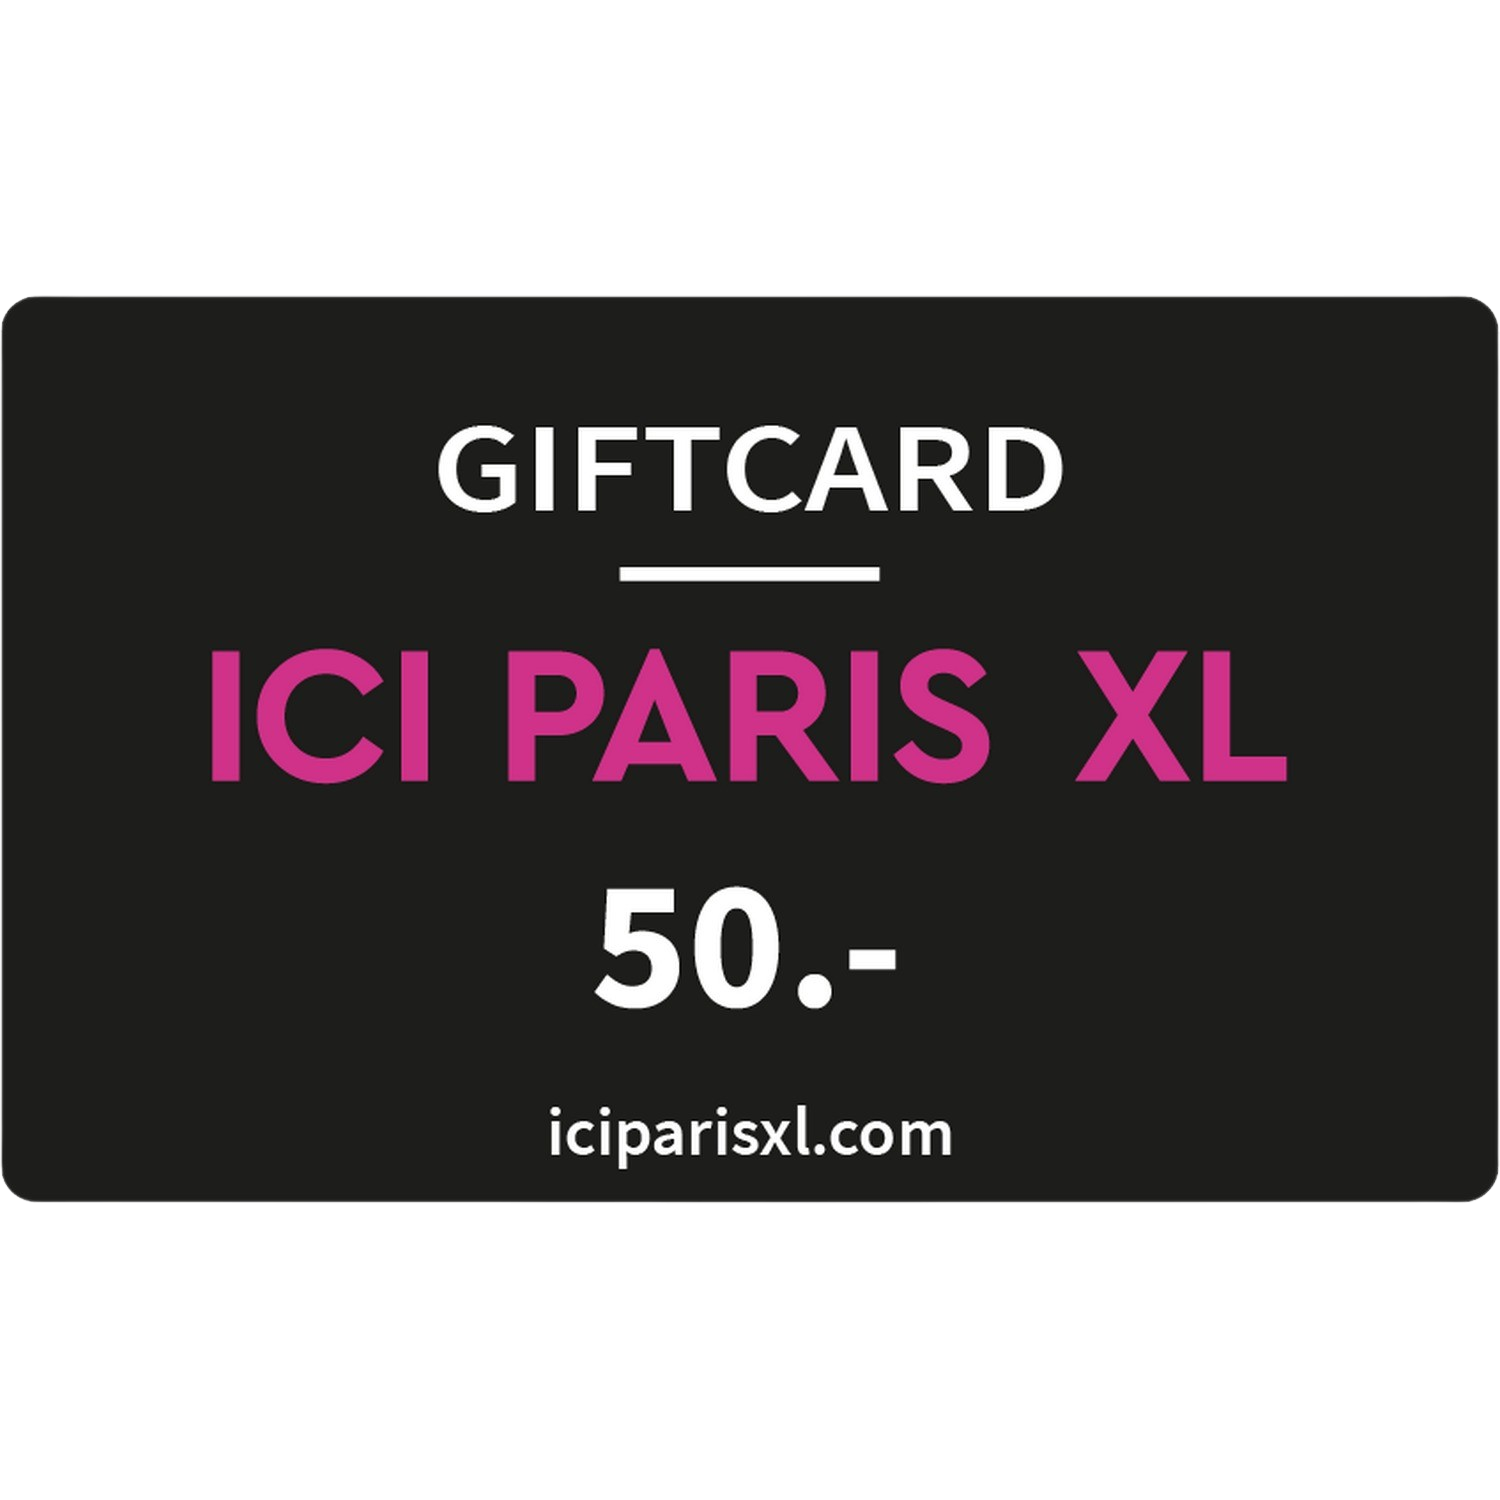 Ici Paris Xl Giftcard 50 Euro